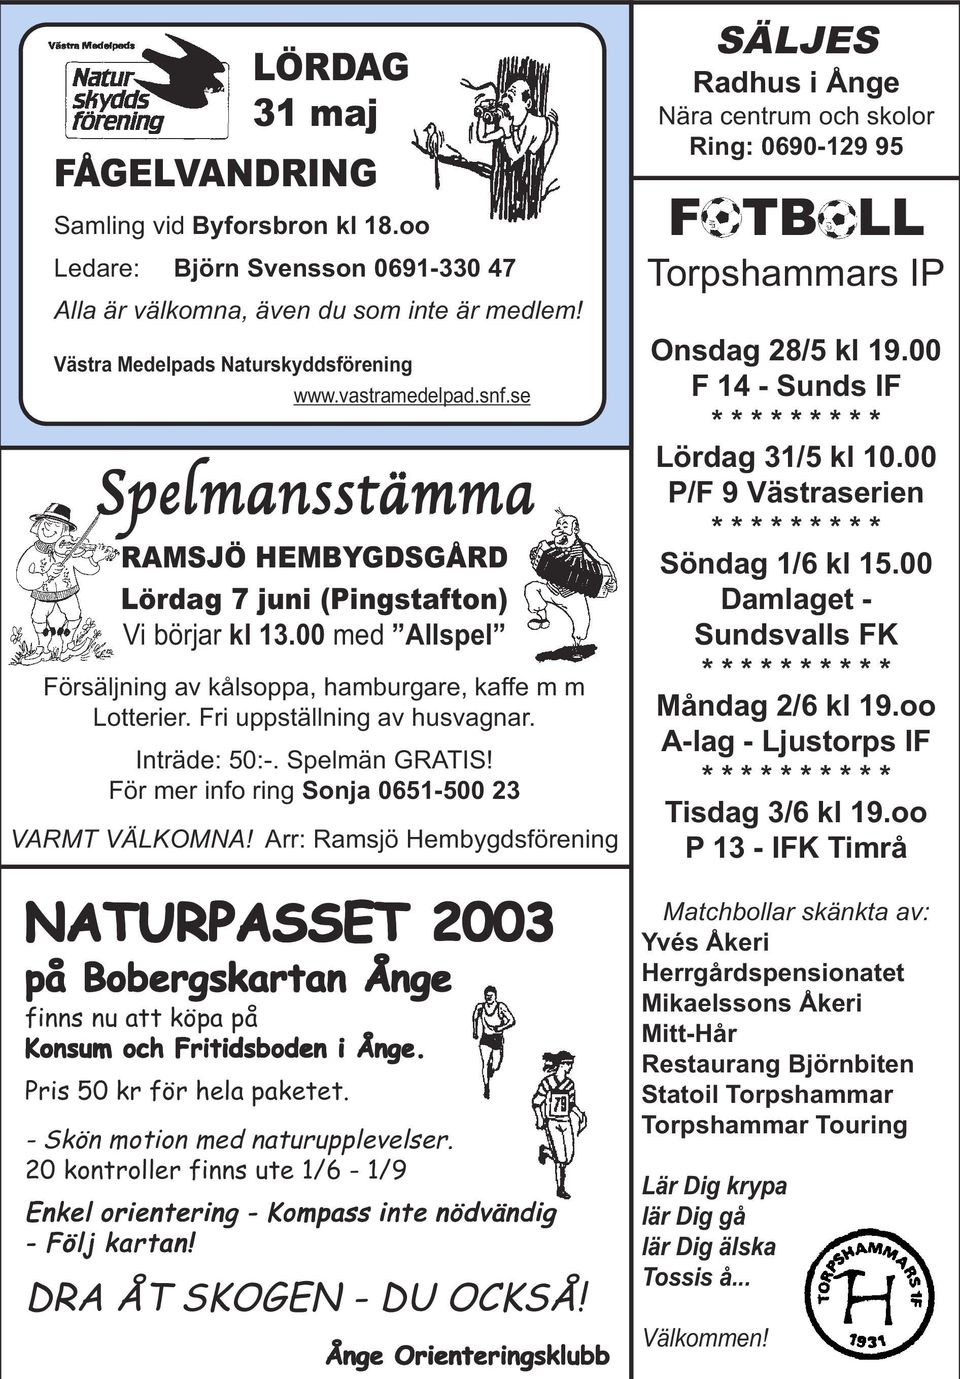 Inträde: 50:-. Spelmän GRATIS! För mer info ring Sonja 0651-500 23 VARMT VÄLKOMNA!